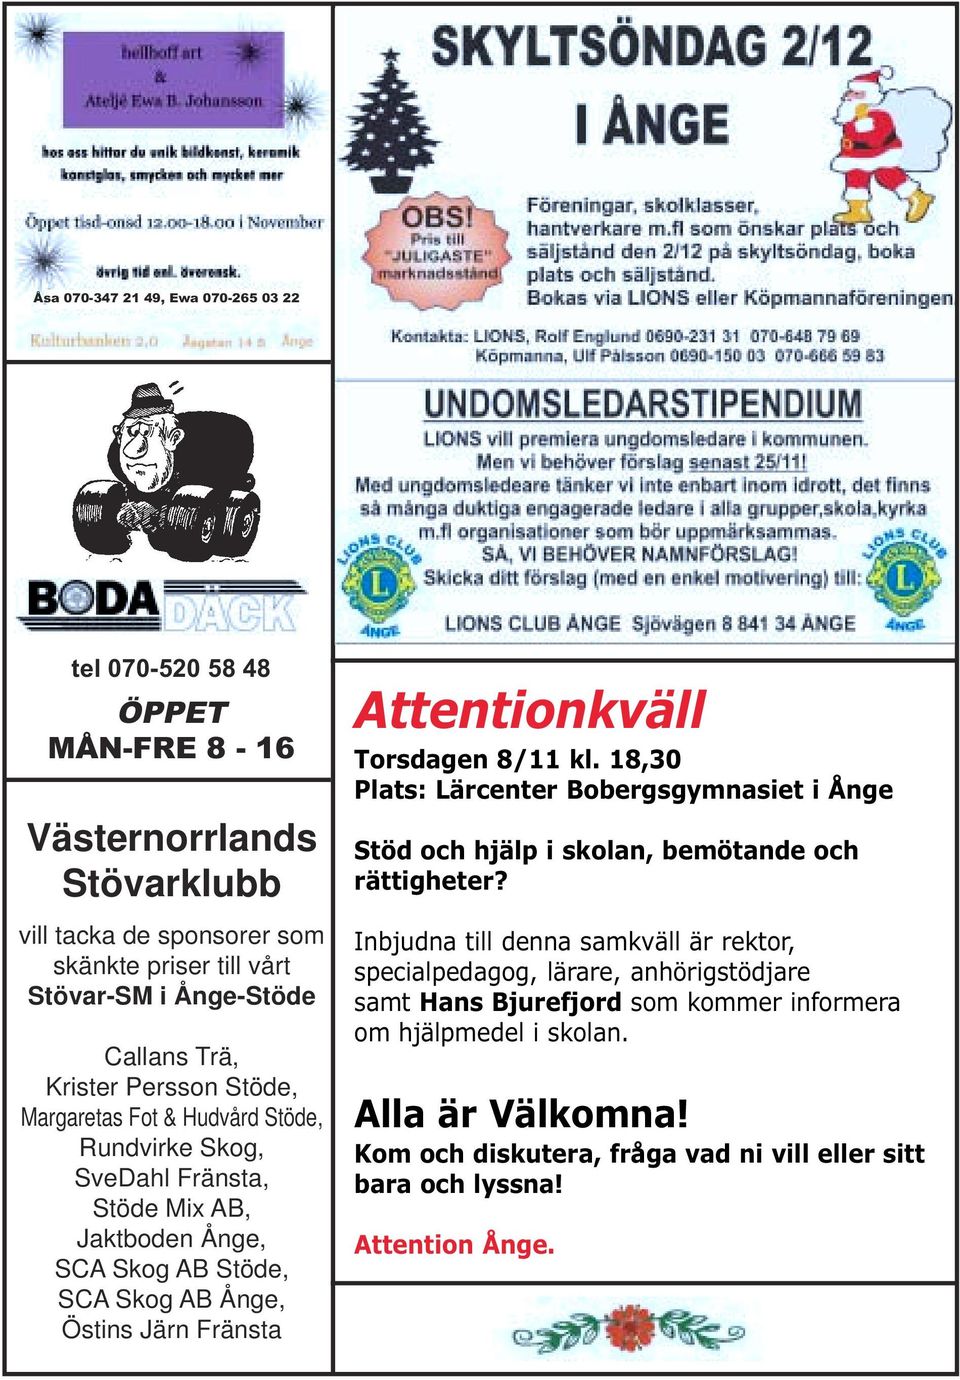 Attentionkväll Torsdagen 8/11 kl. 18,30 Plats: Lärcenter Bobergsgymnasiet i Ånge Stöd och hjälp i skolan, bemötande och rättigheter?